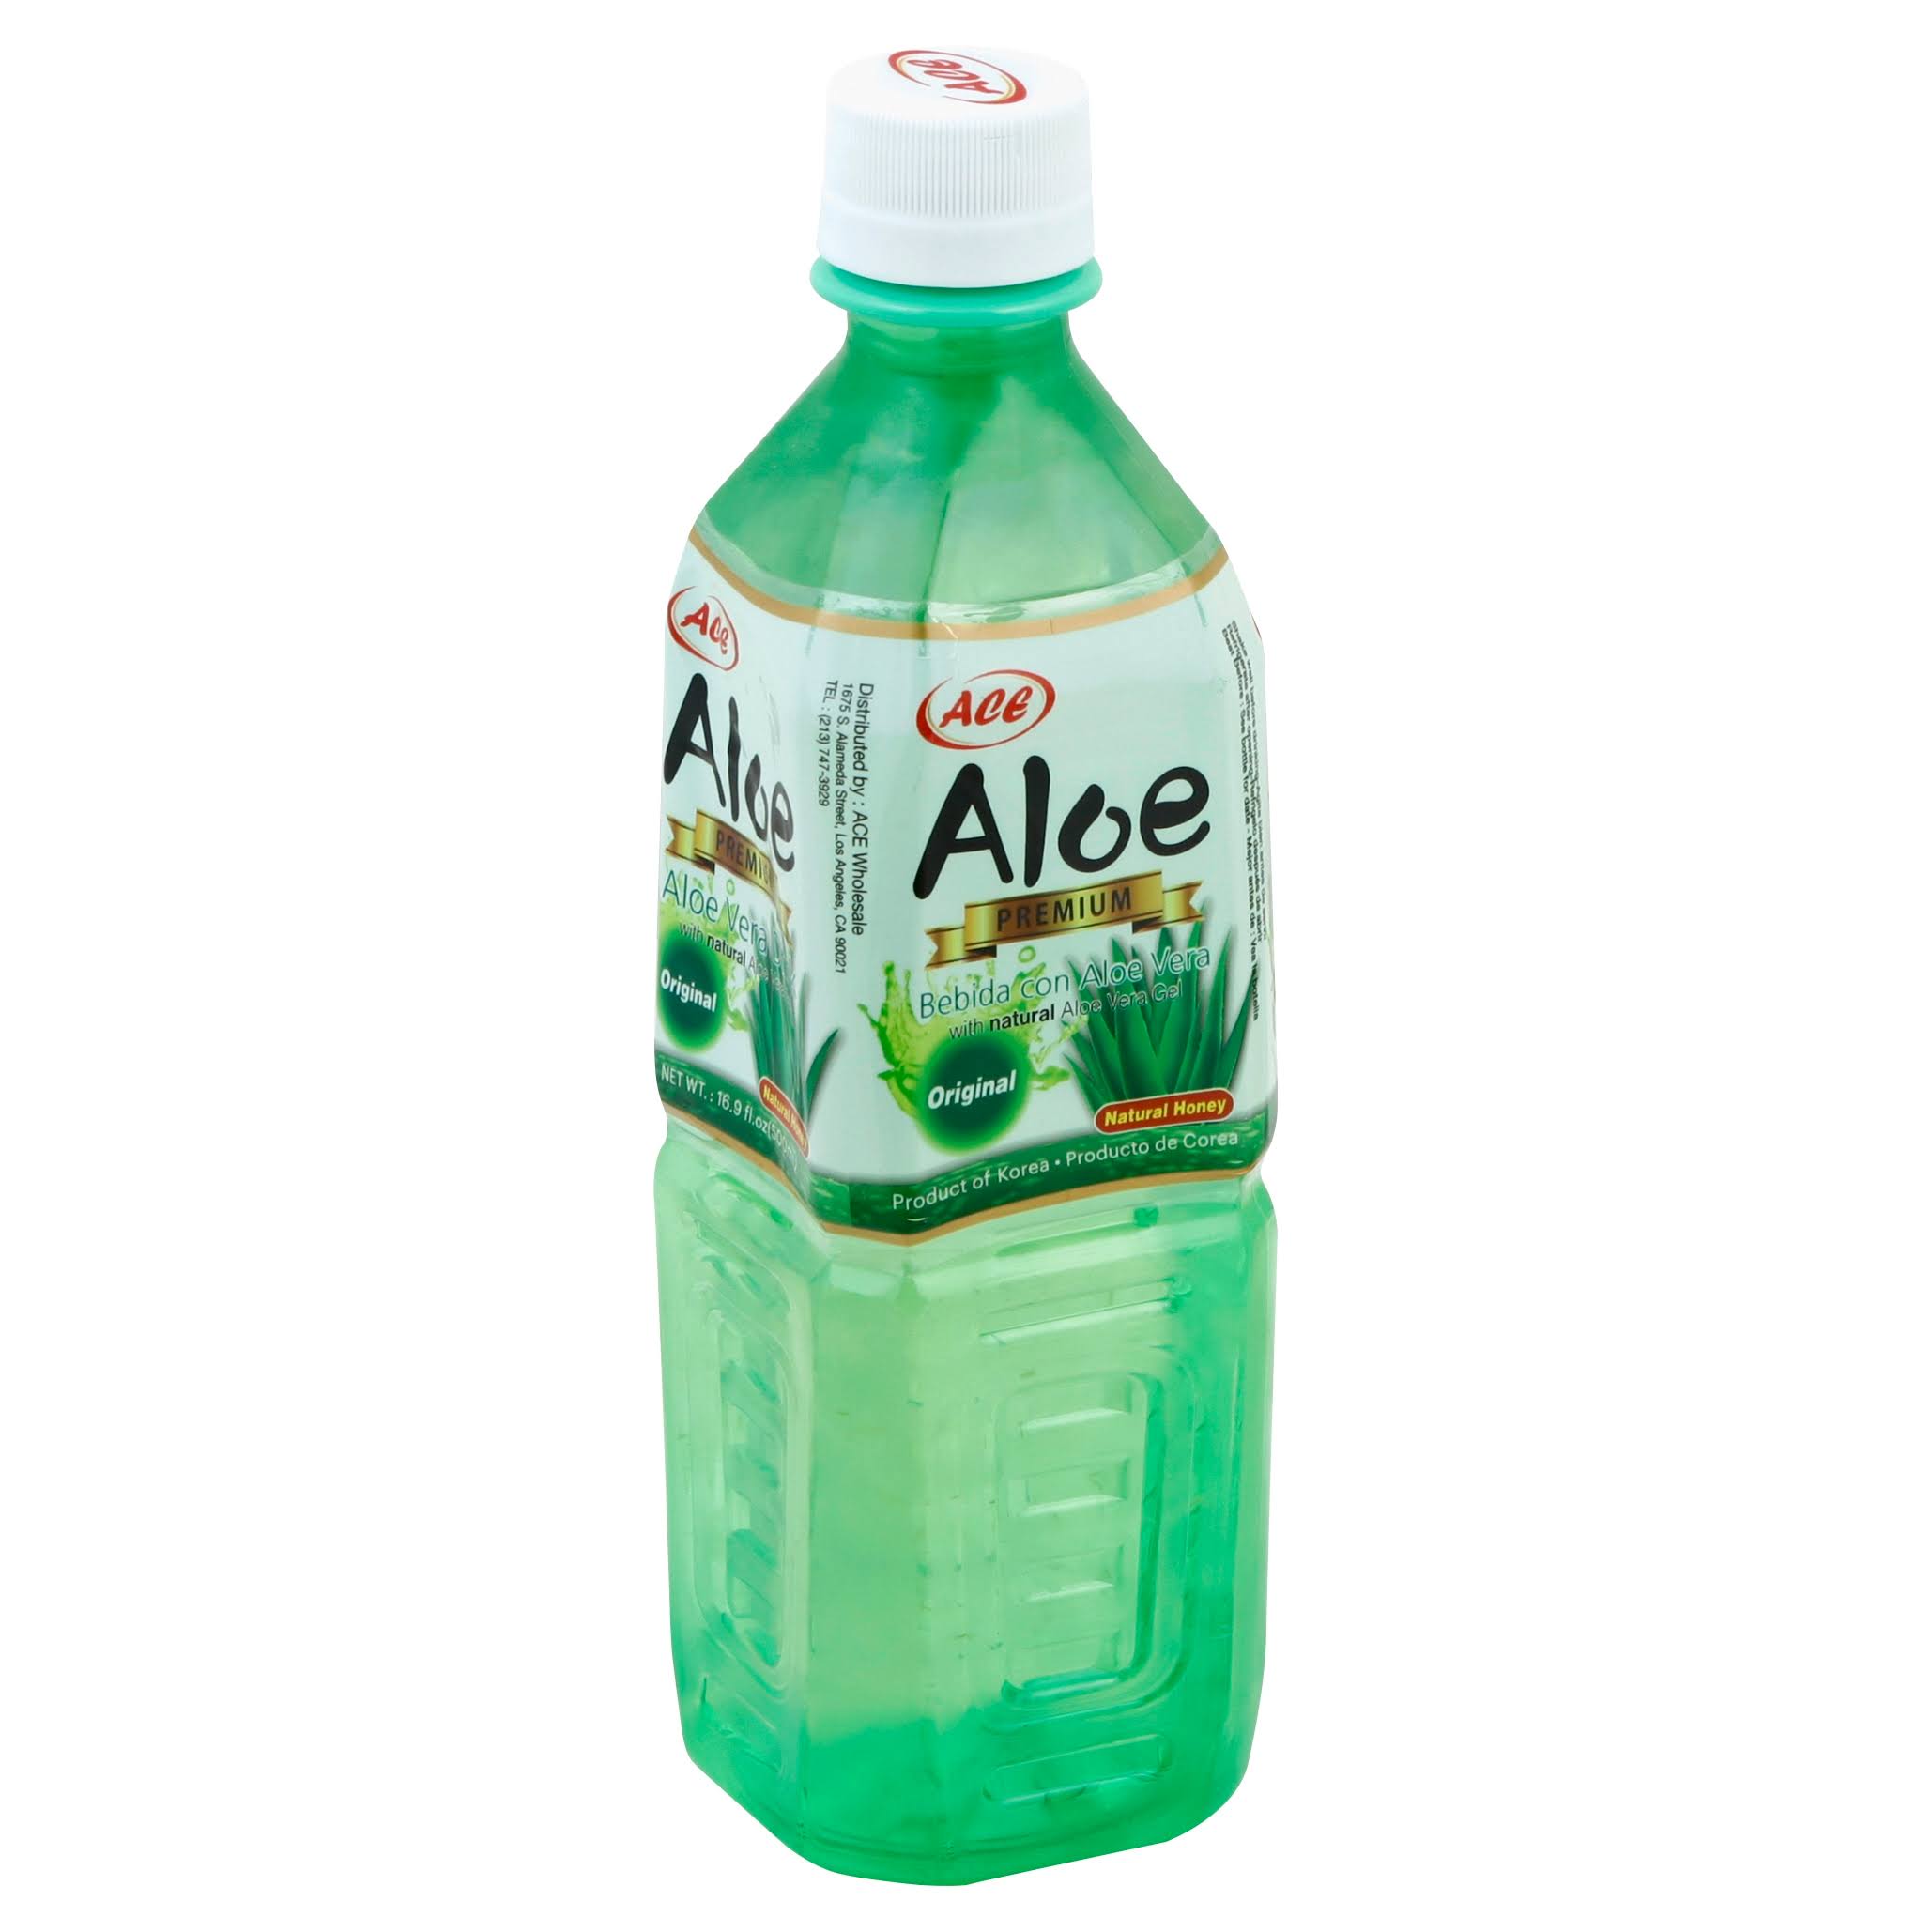 Ace Aloe, Premium, Original - 16.9 fl oz